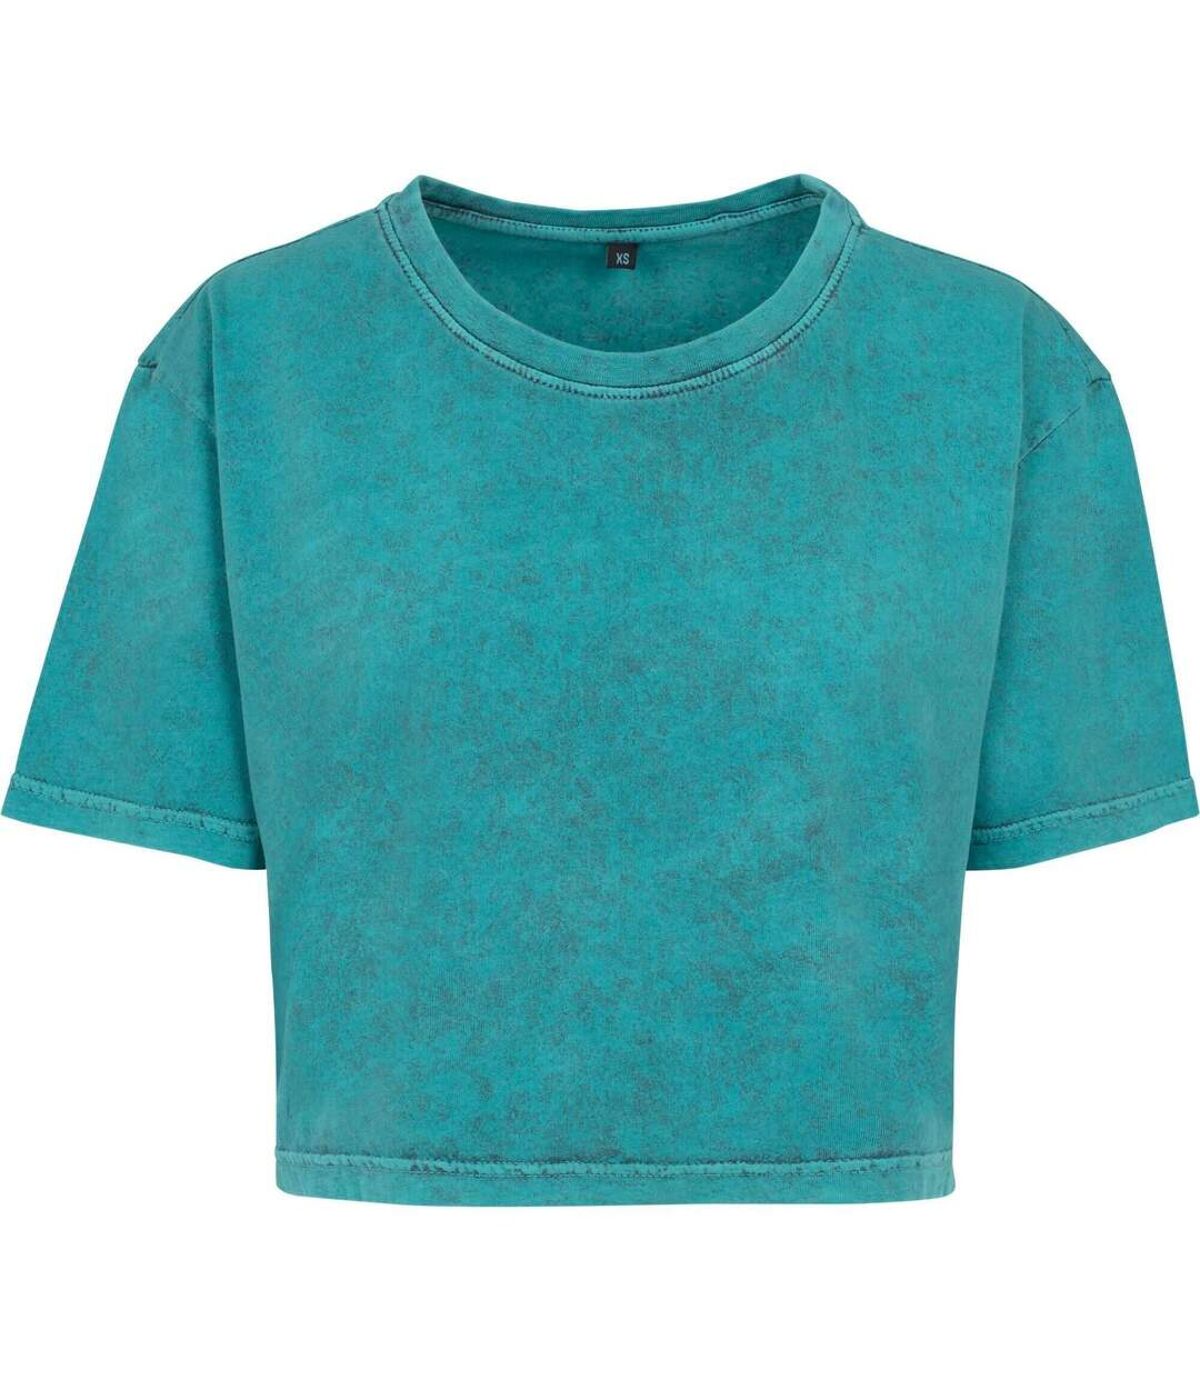 T-shirt court - femme - BY054 - vert émeraude